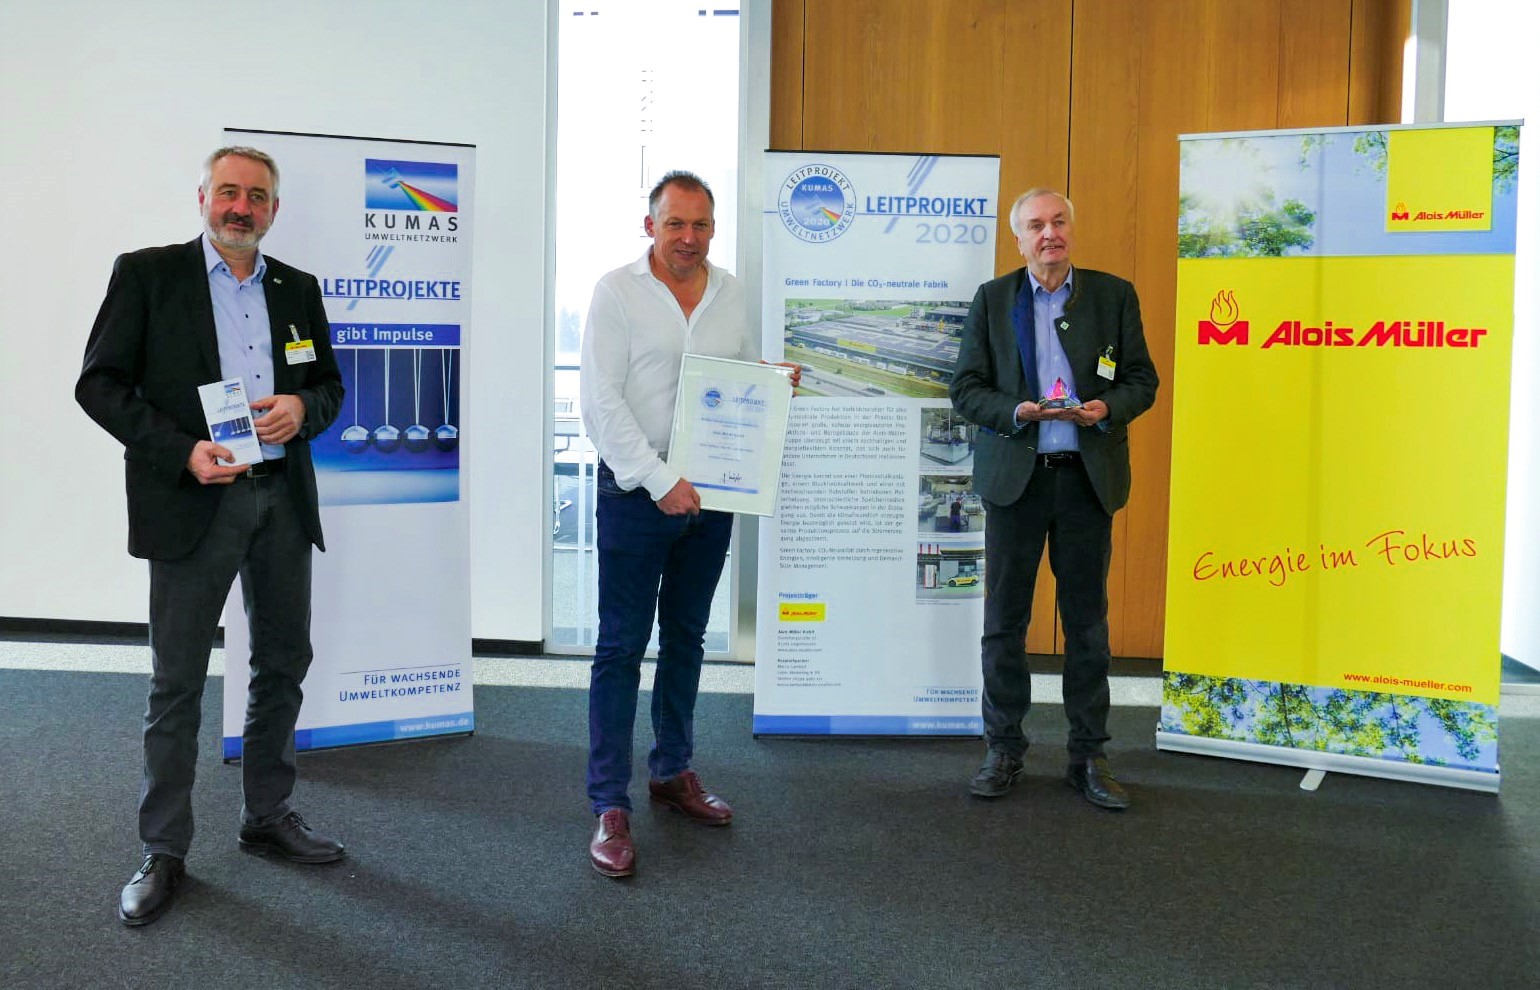 Die Green Factory wurde mit dem Titel ""Offizielles Leitprojekt des KUMAS UMWELTNETZWERKS 2020" ausgezeichnet und für das in Ungerhausen realisierte Konzept der CO2-neutralen Fabrik geehrt.